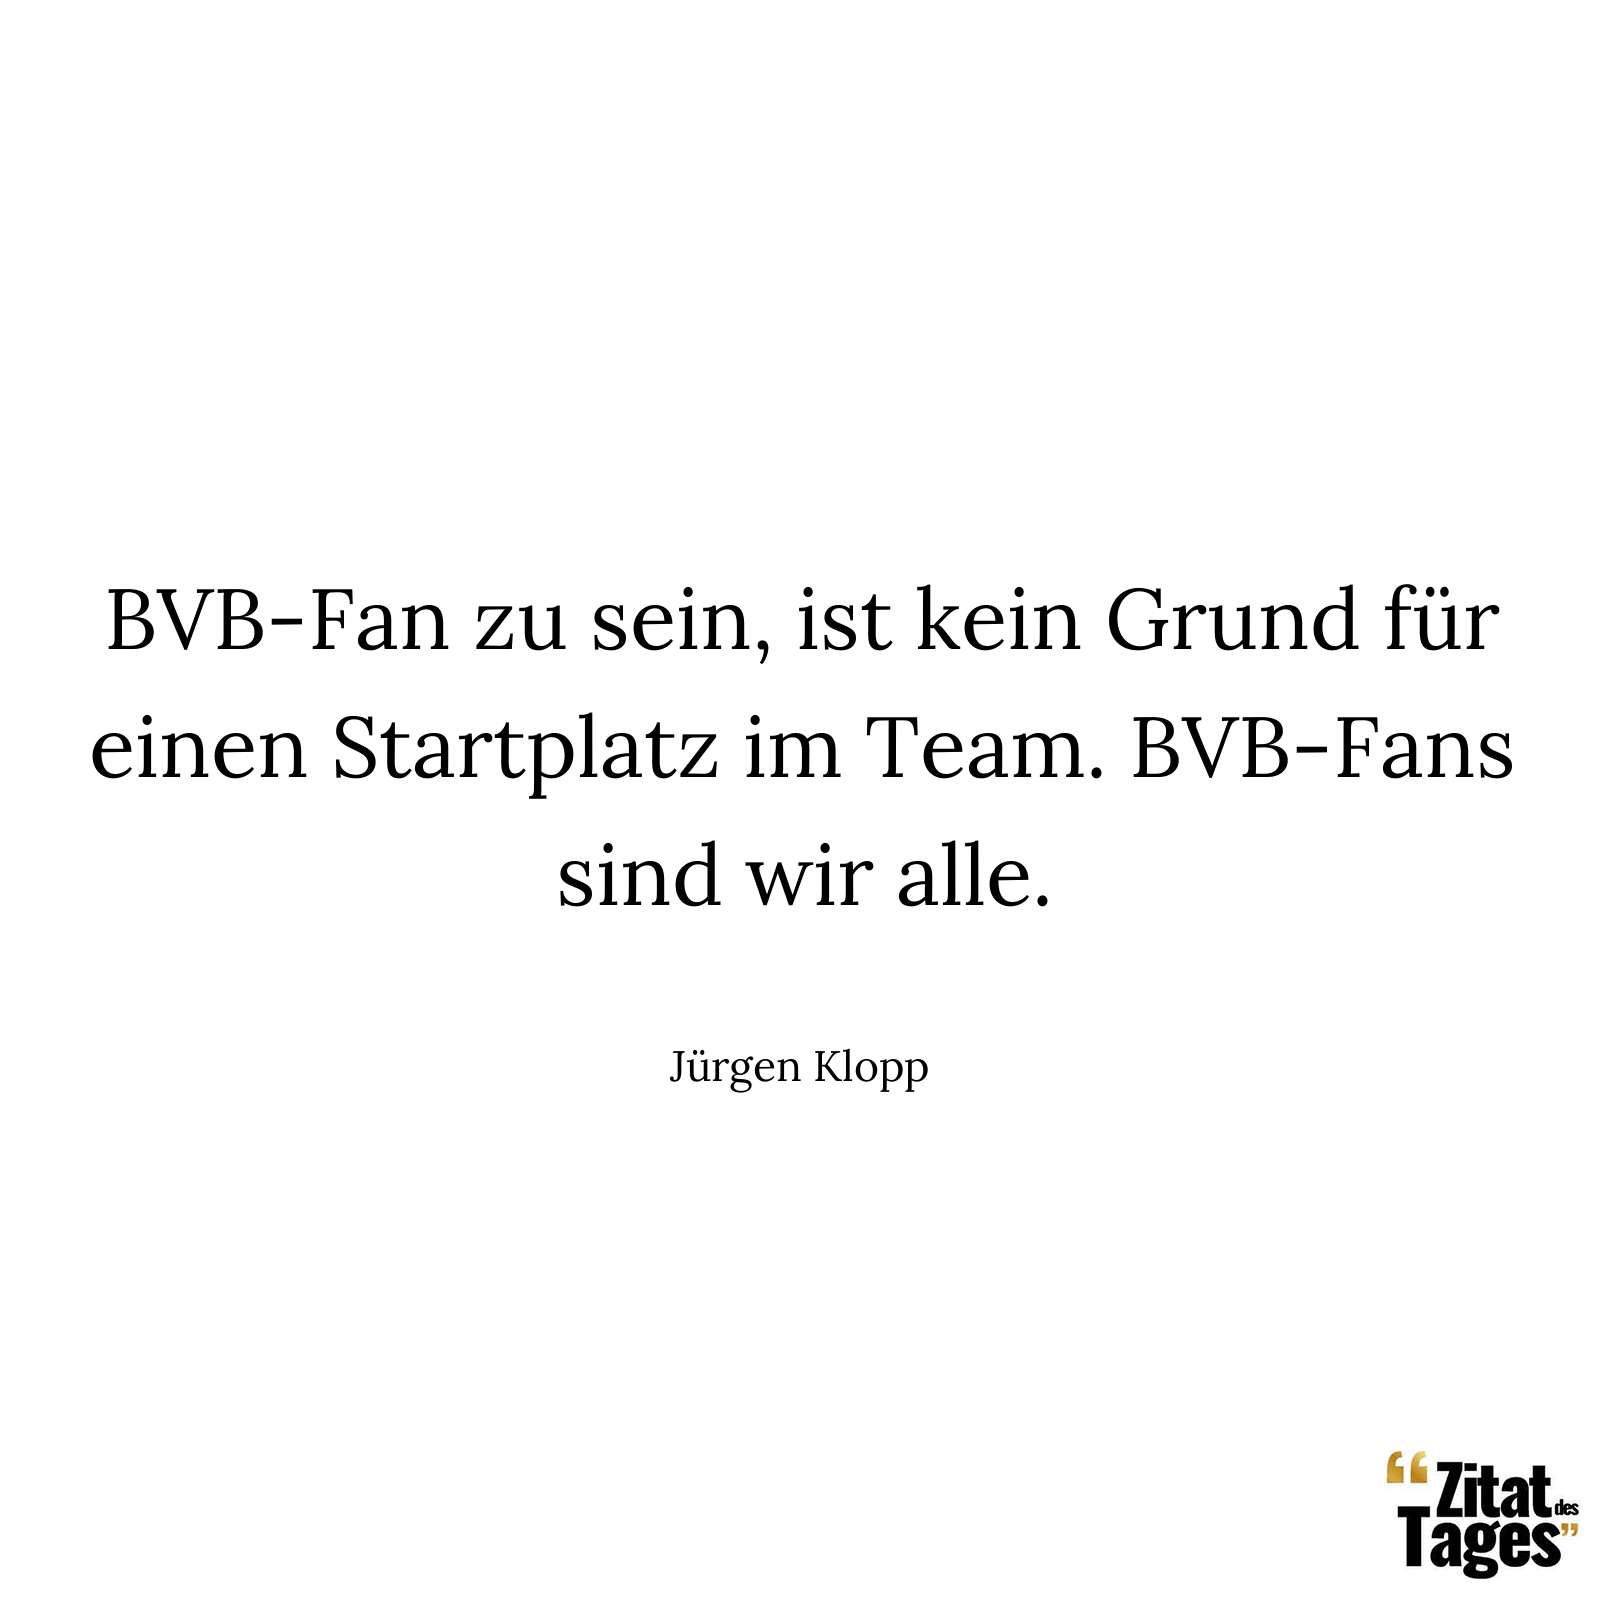 BVB-Fan zu sein, ist kein Grund für einen Startplatz im Team. BVB-Fans sind wir alle. - Jürgen Klopp